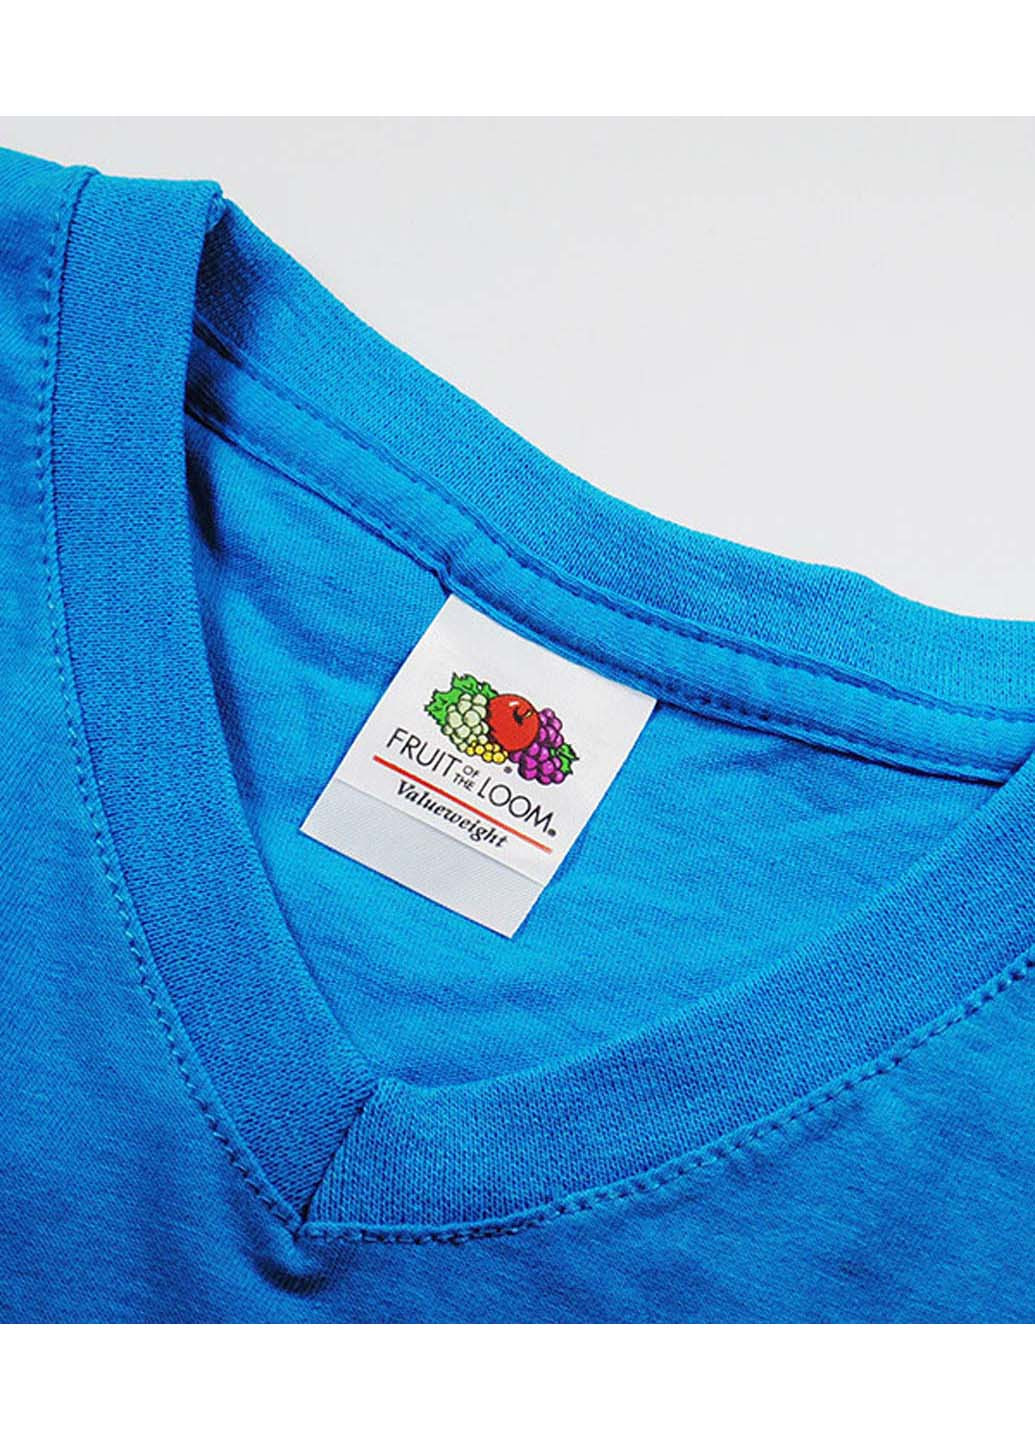 Голубая футболка Fruit of the Loom Valueweight v-neck